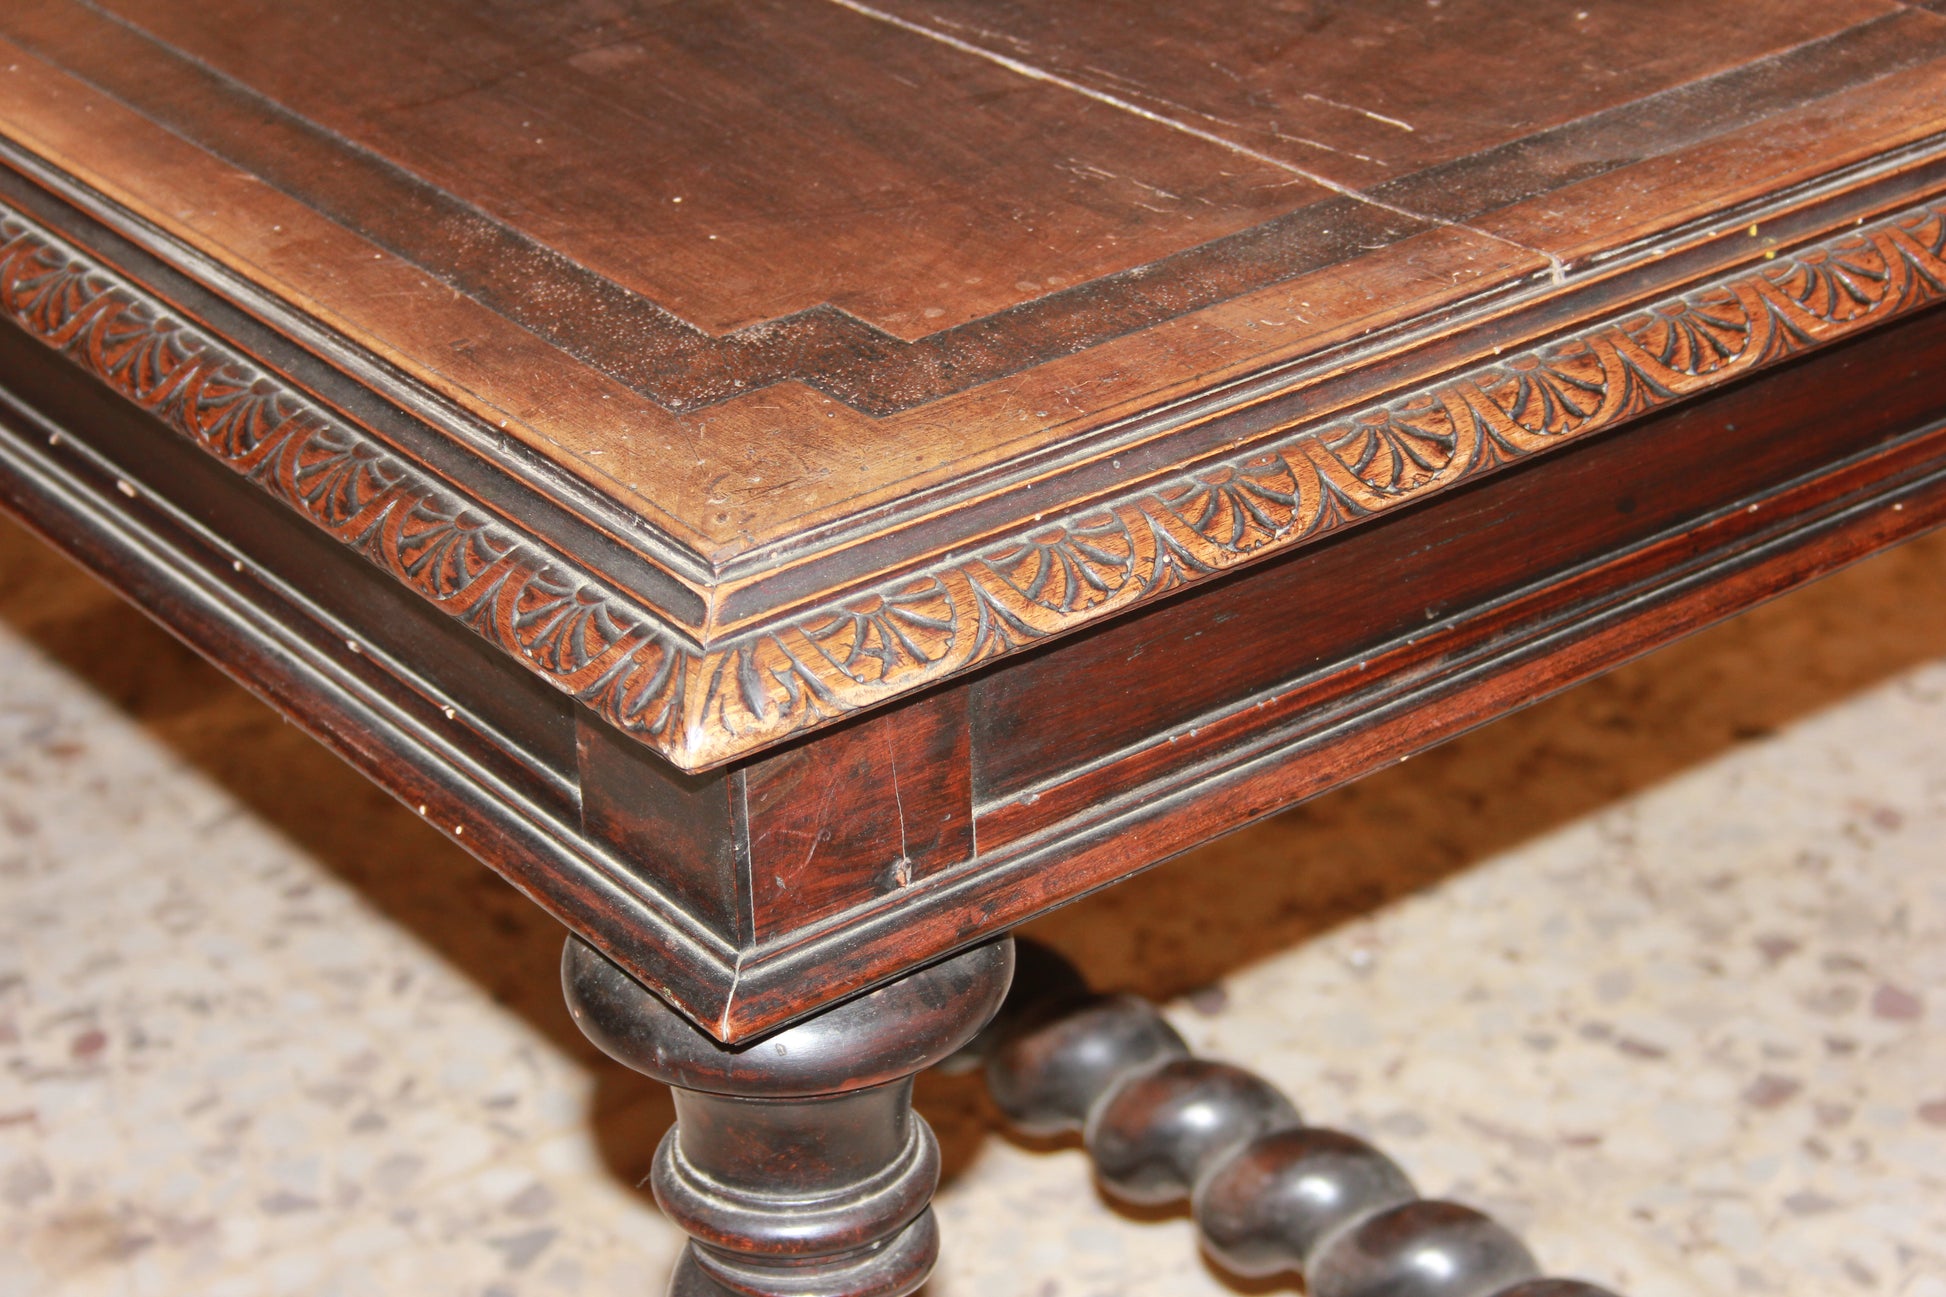 Grande tavolo francese di inizio 1800 in legno di noce con intagli